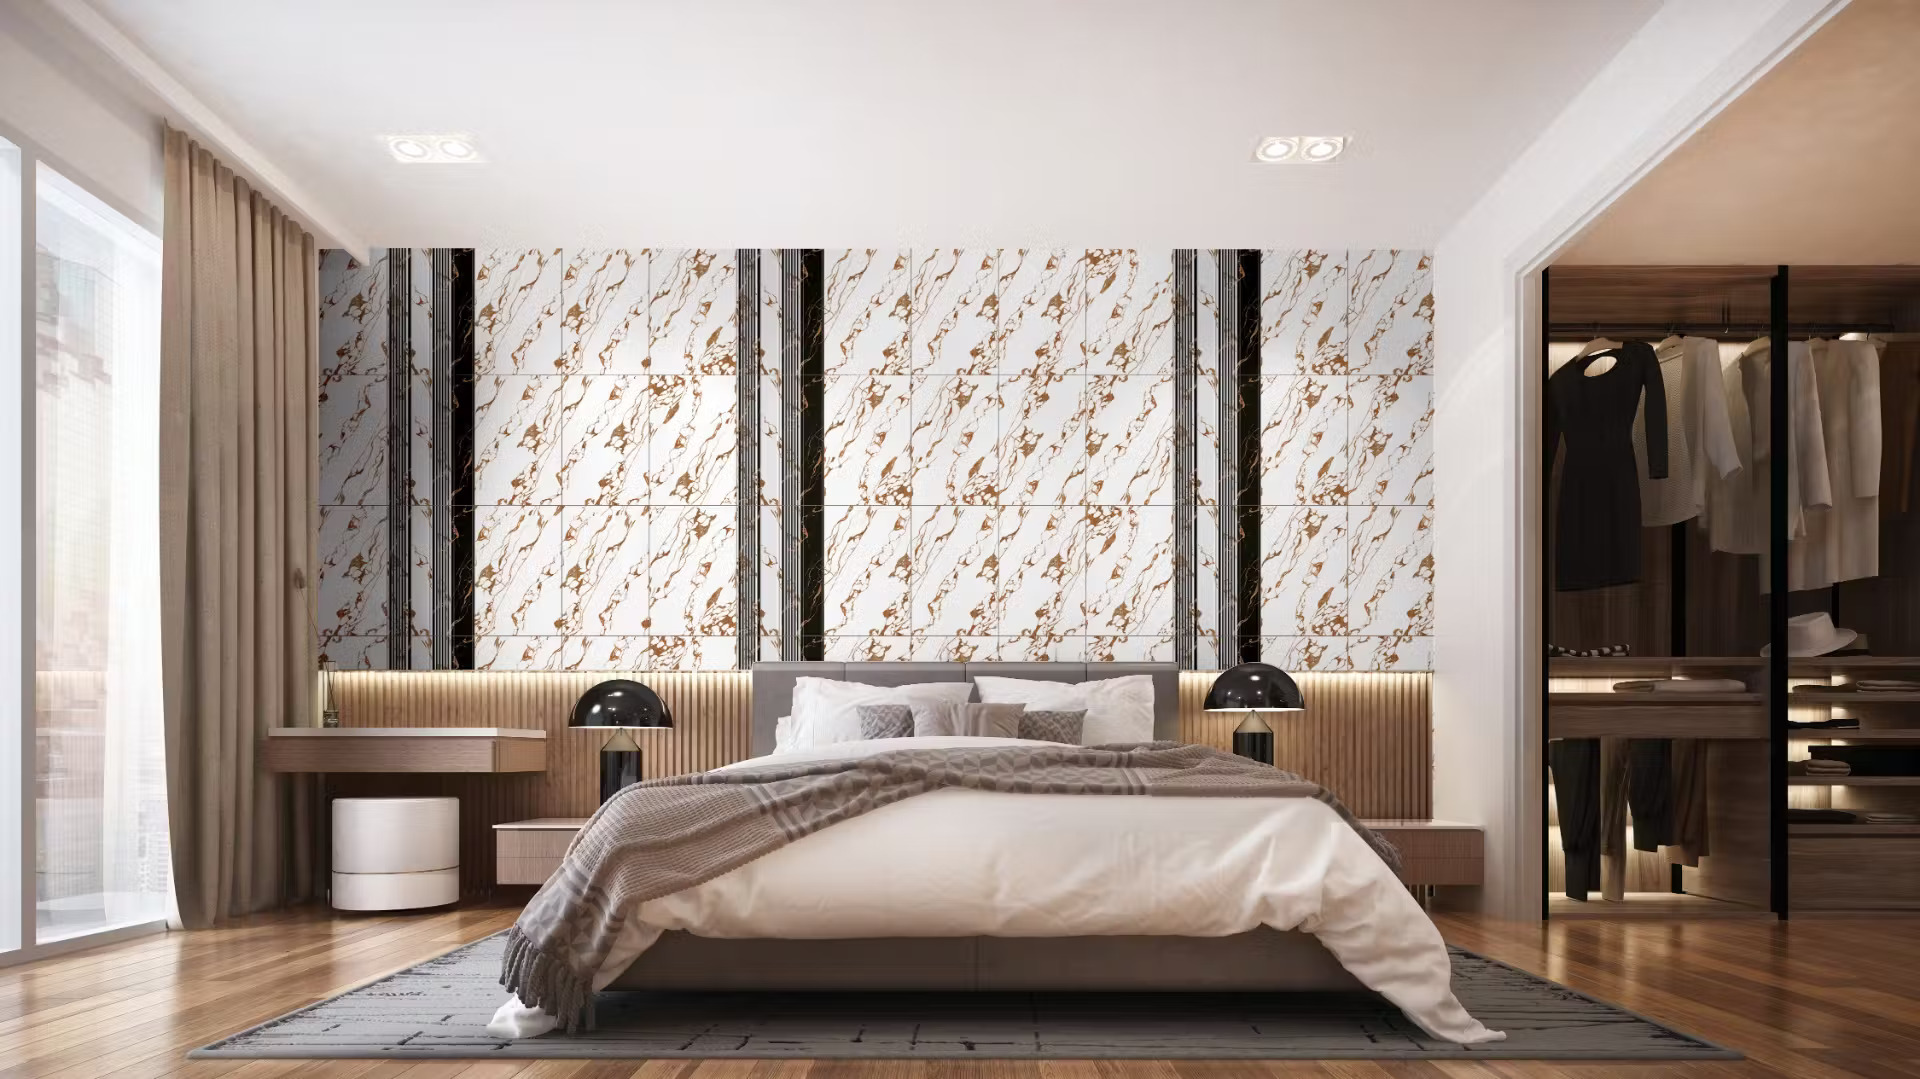 DC canto ocean style bedroom floor tile